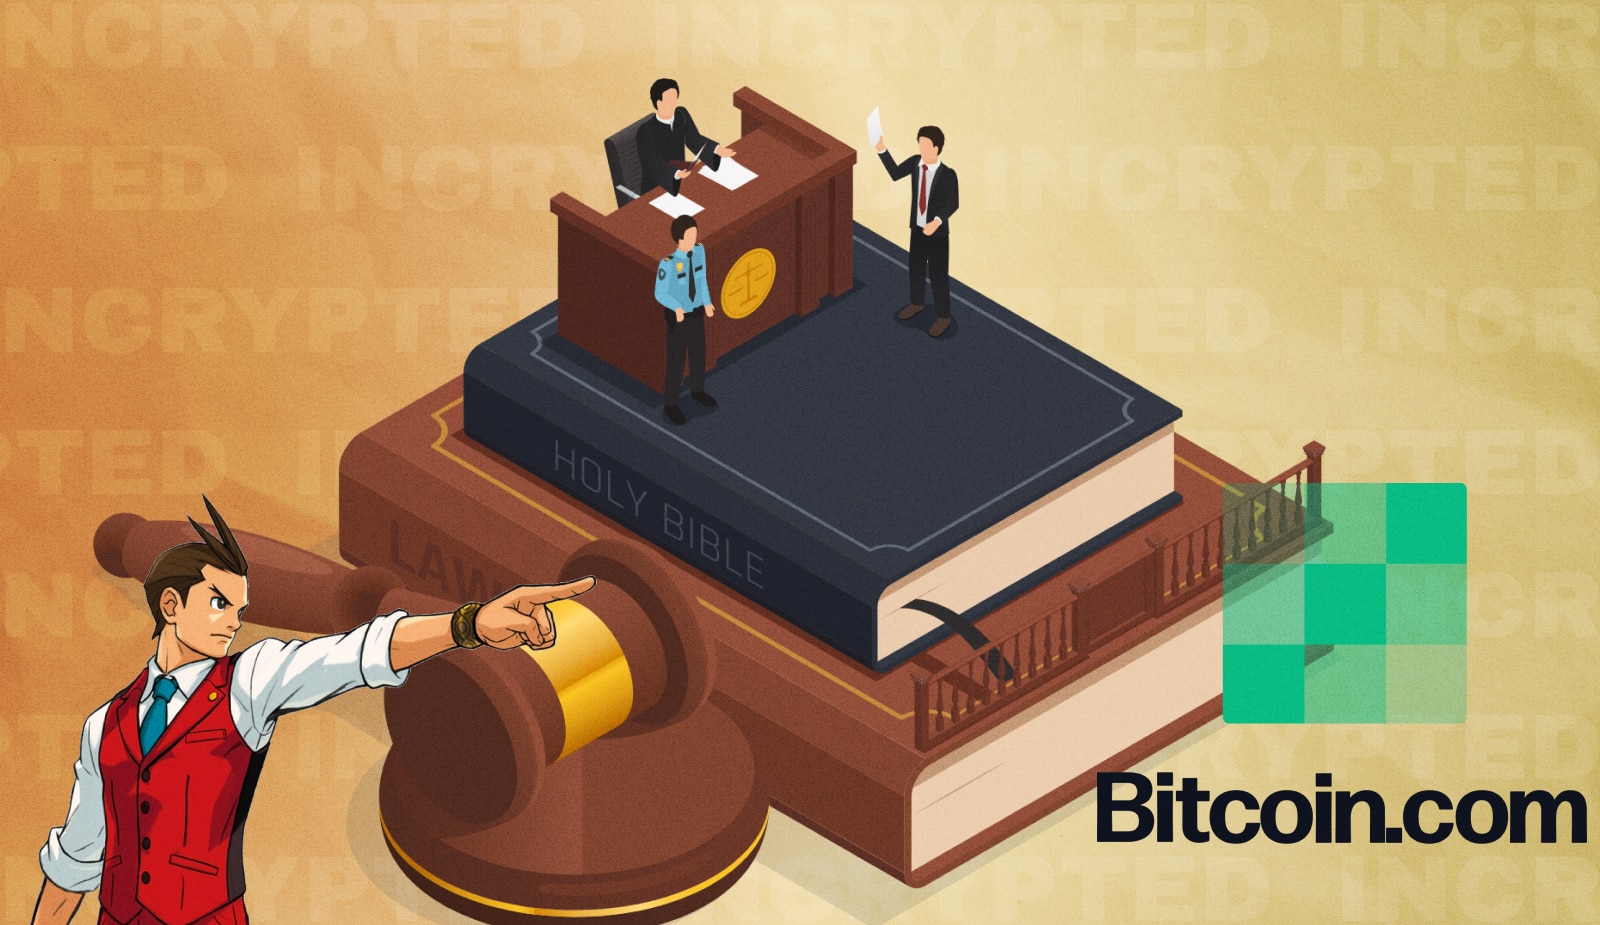 Block подала в суд на Bitcoin.com из-за токена VERSE. Заглавный коллаж новости.